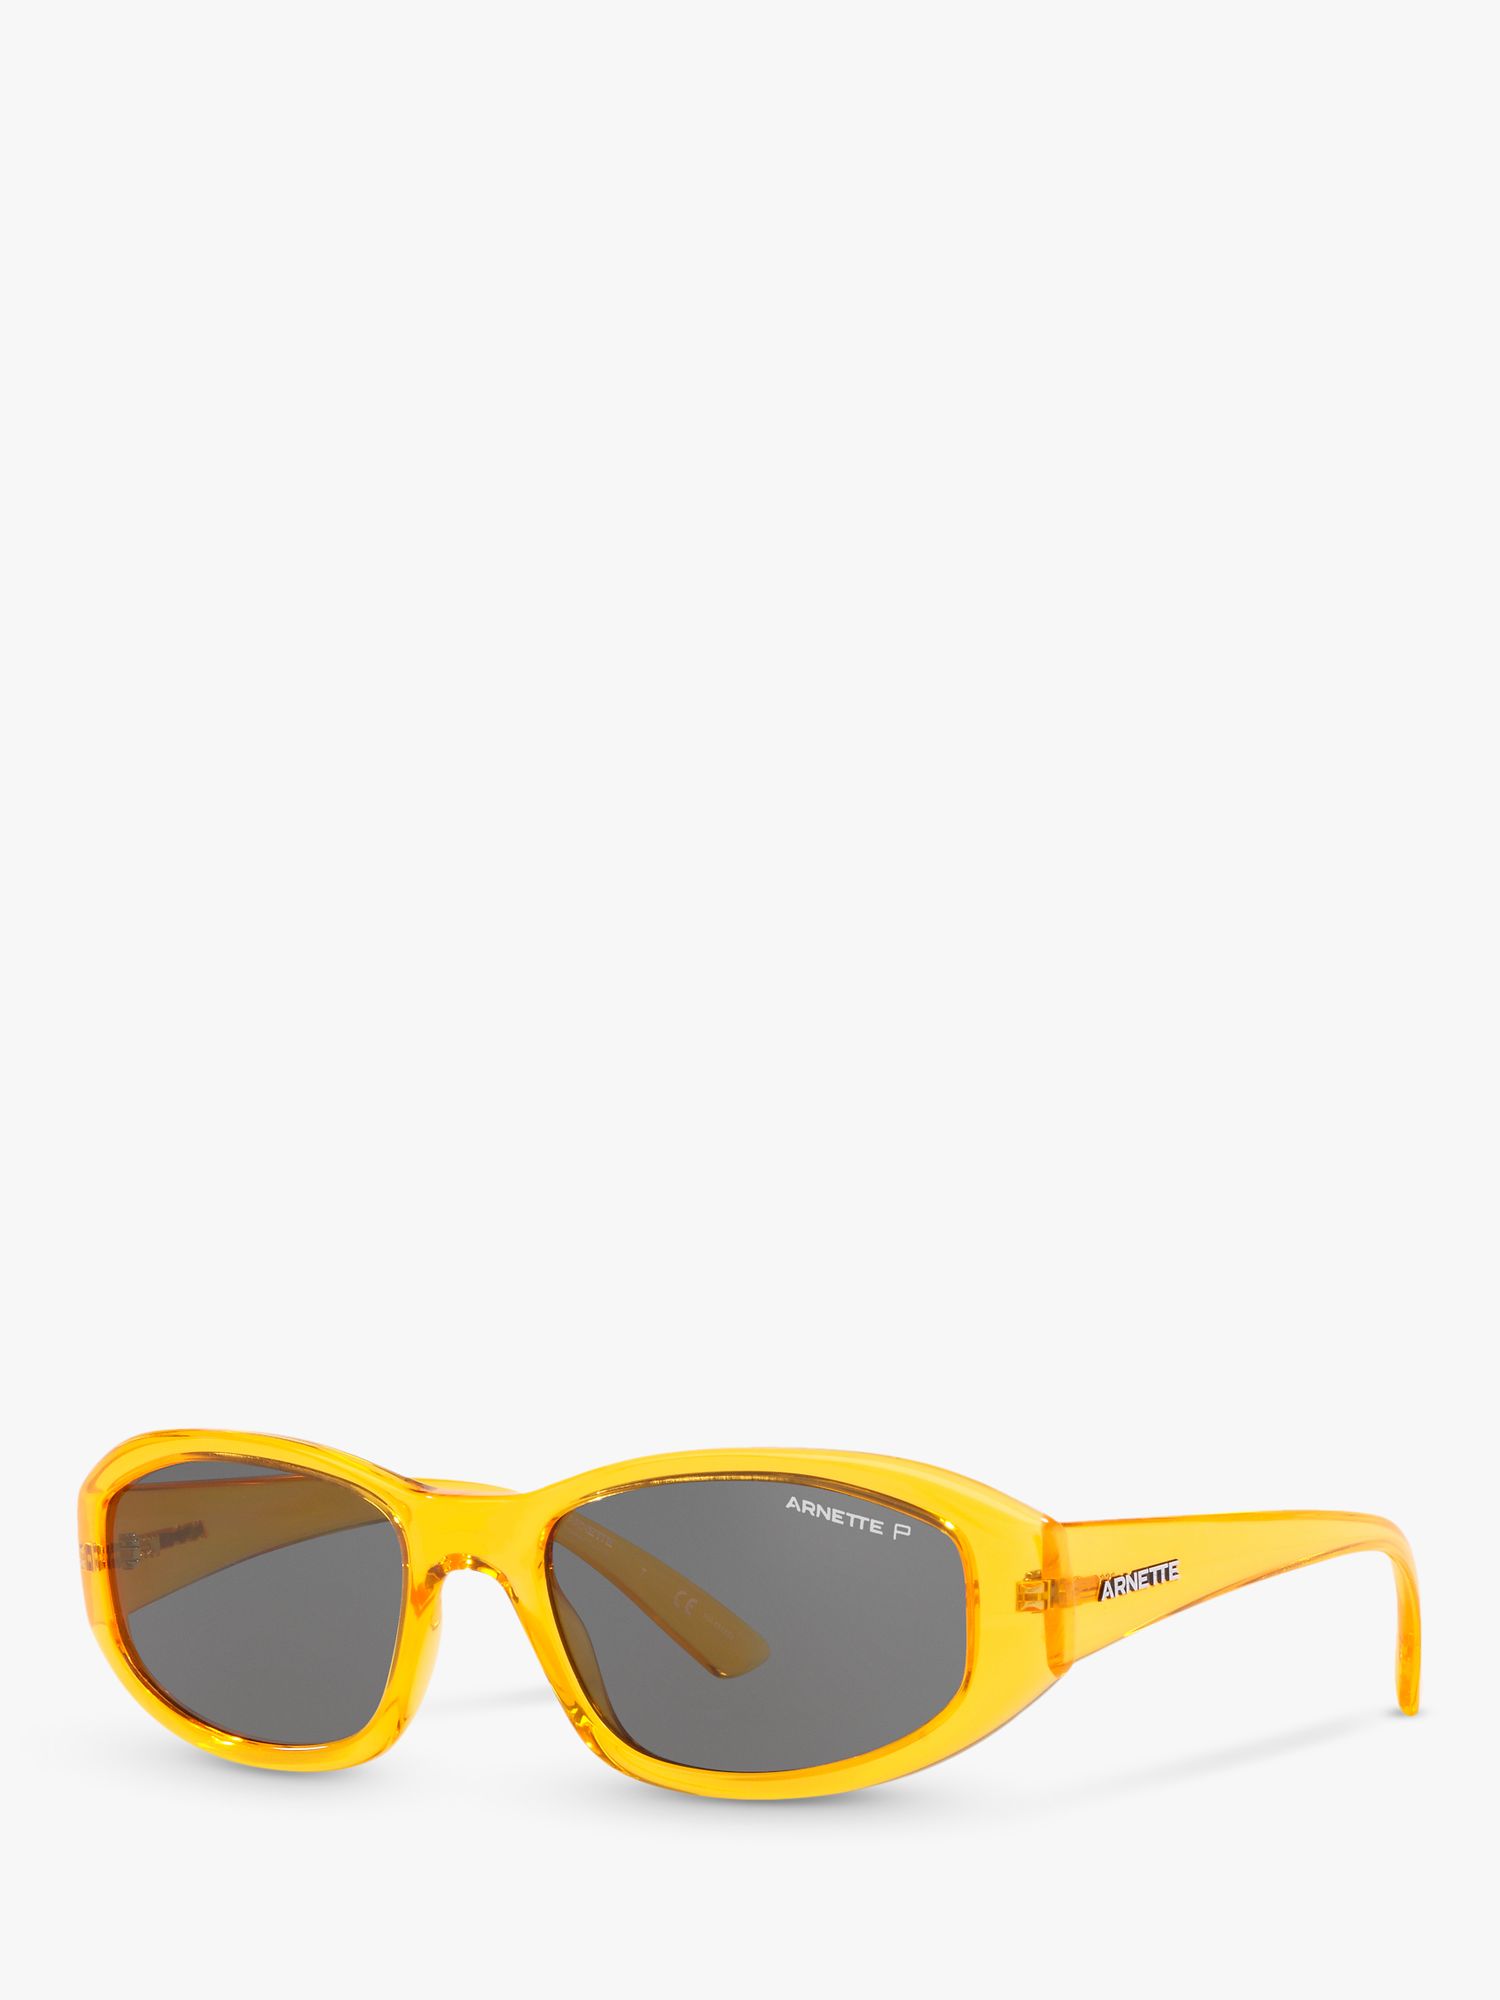 Arnette AN4266 Men's Polarised Rectangular Sunglasses